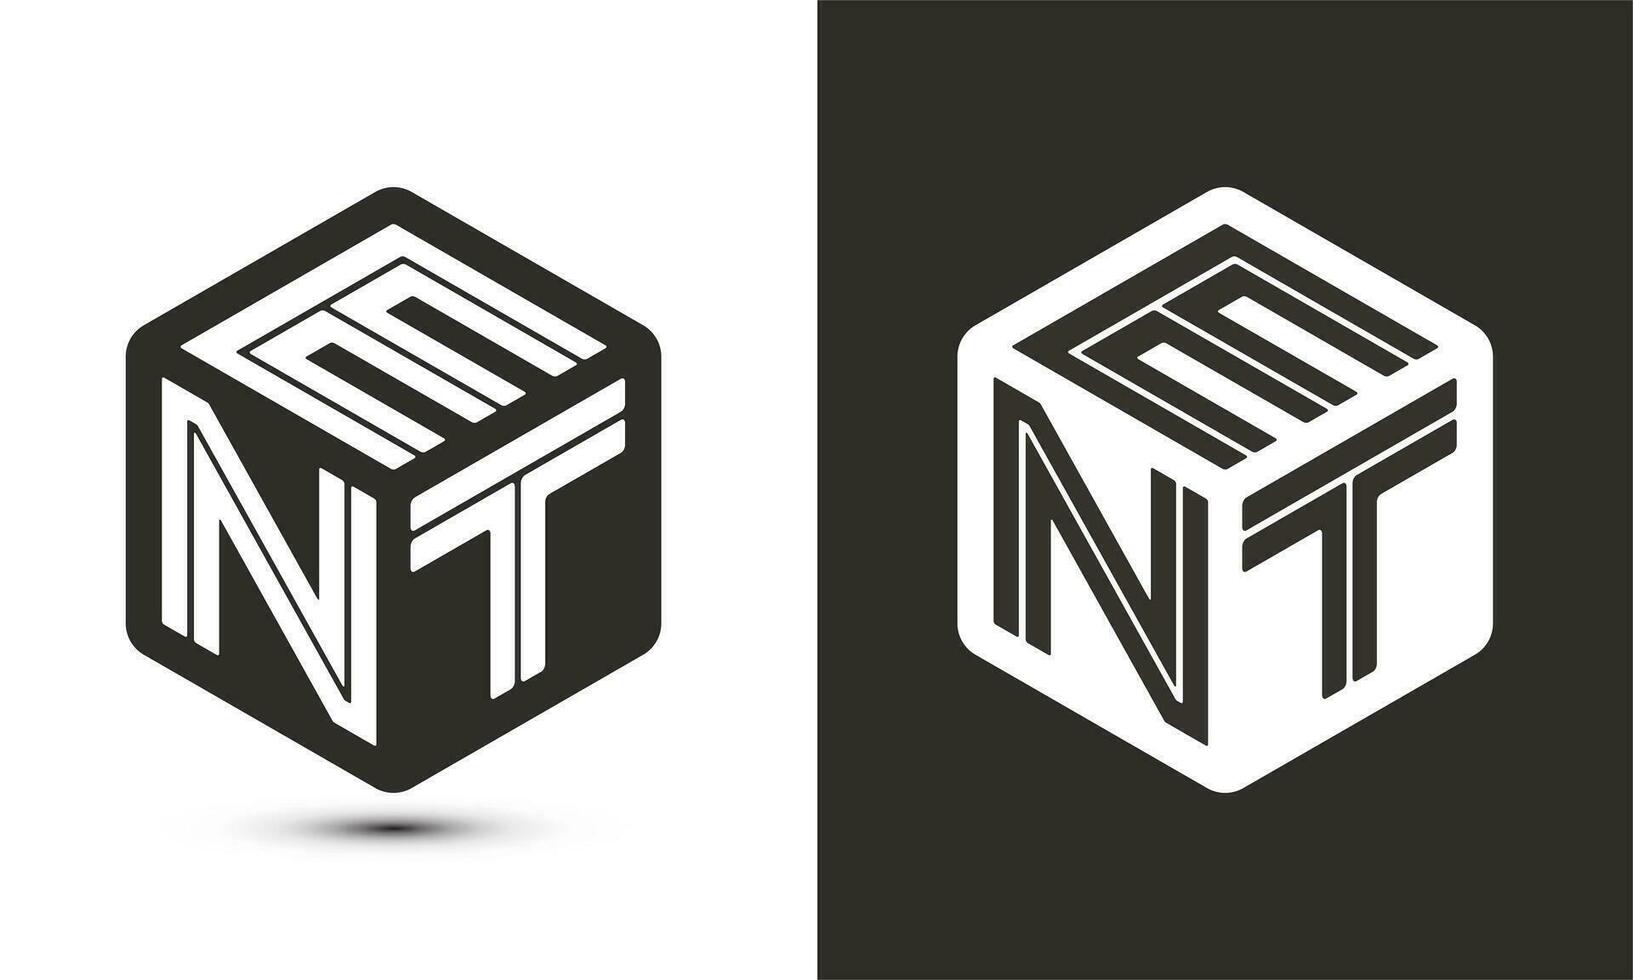 ENT letter logo design with illustrator cube logo, vector logo modern alphabet font overlap style.